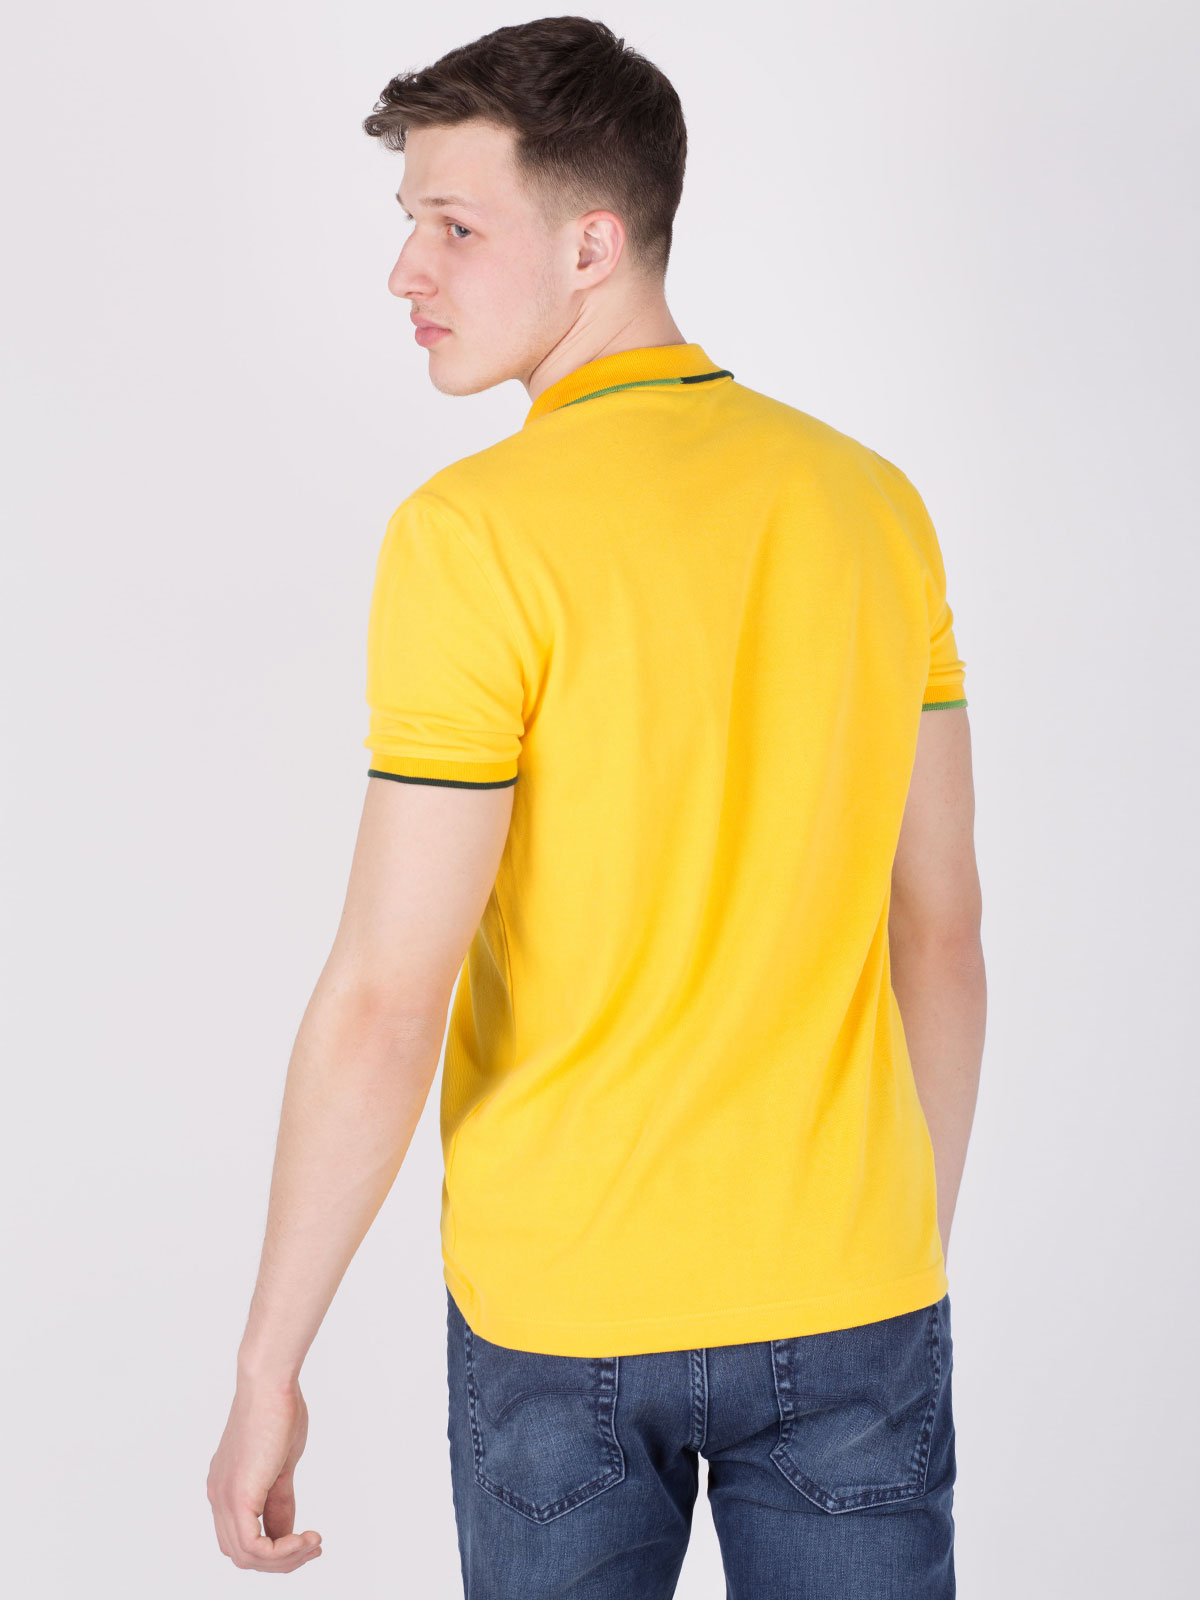 Μπλούζα σε έντονο κίτρινο χρώμα με χρωμ - 93384 € 16.31 img4